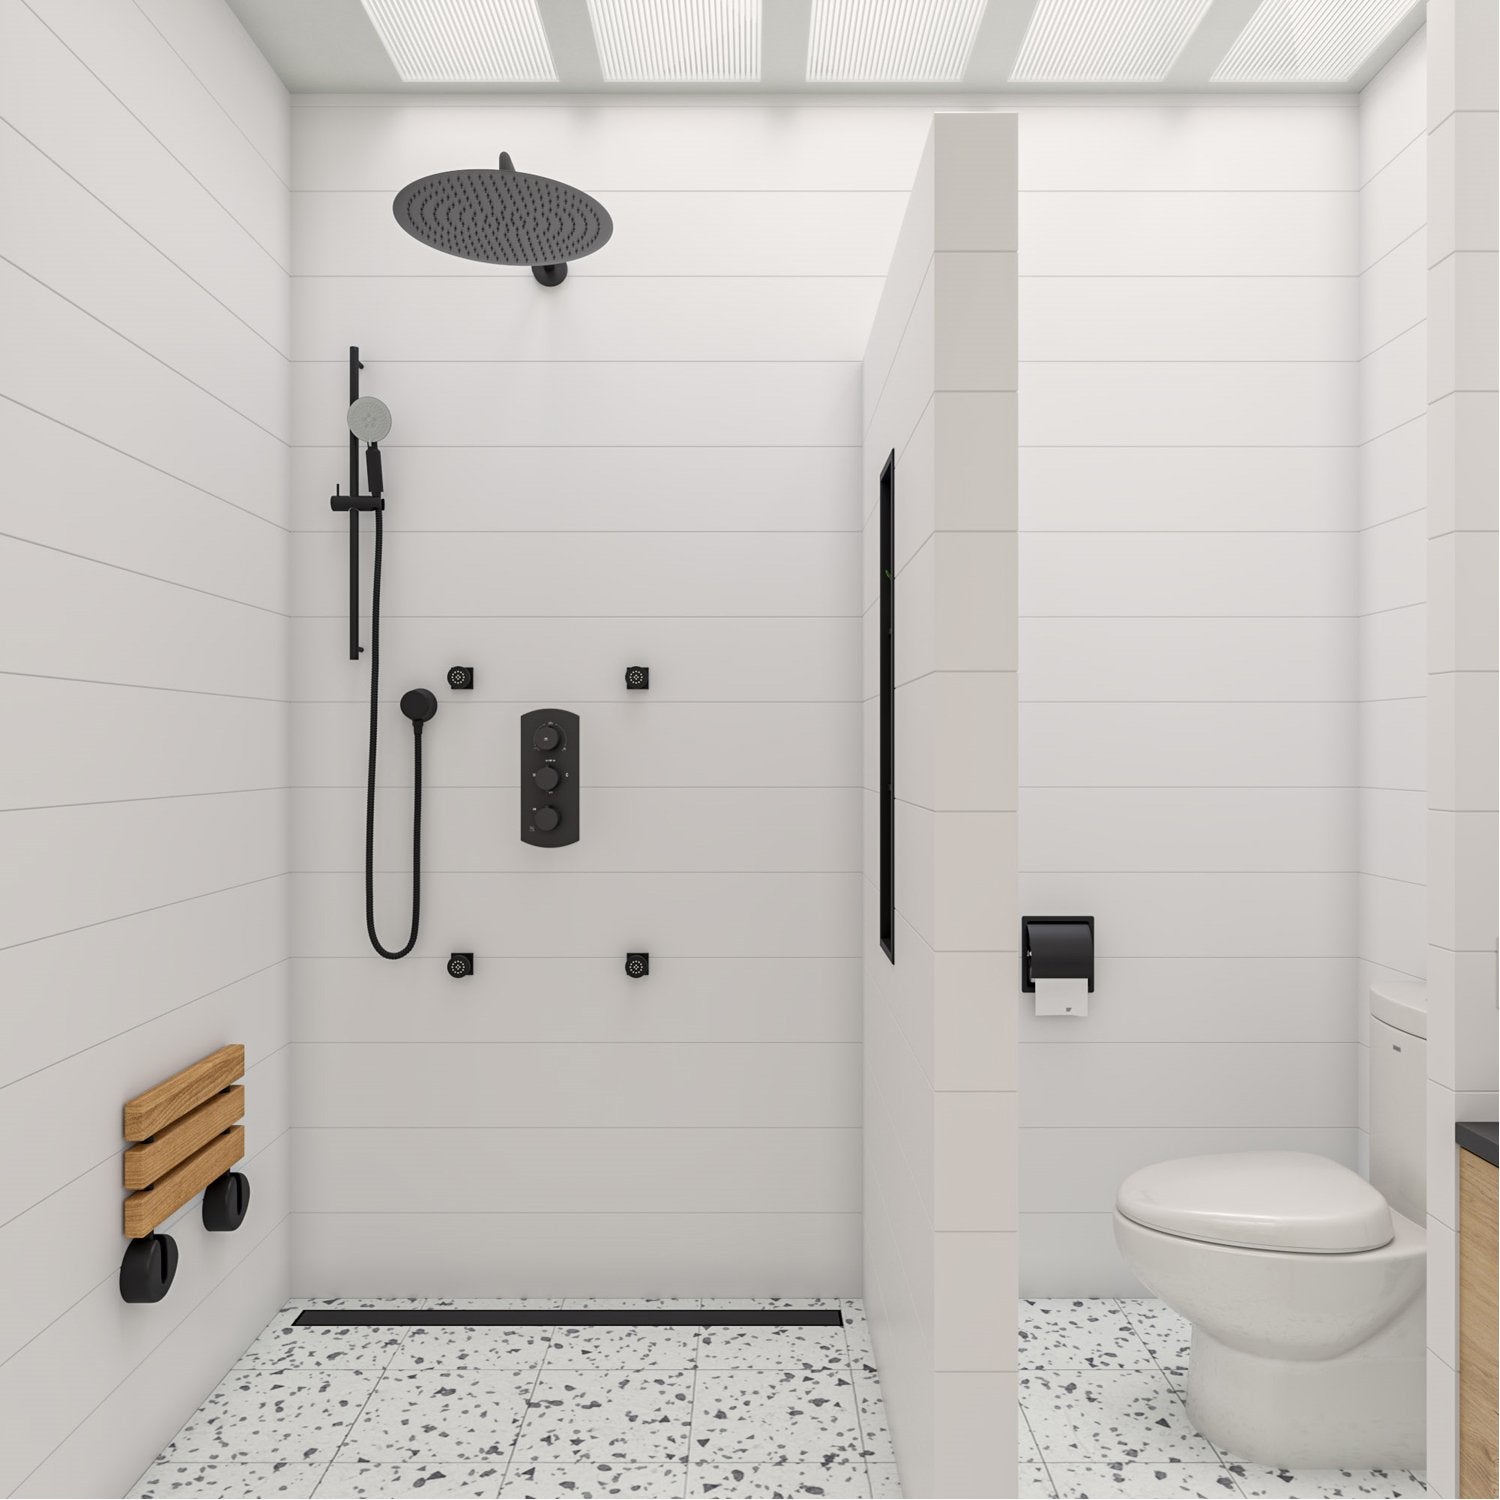 Matte Black/Chrome Stainless Steel Bathroom Waterproof Toilet